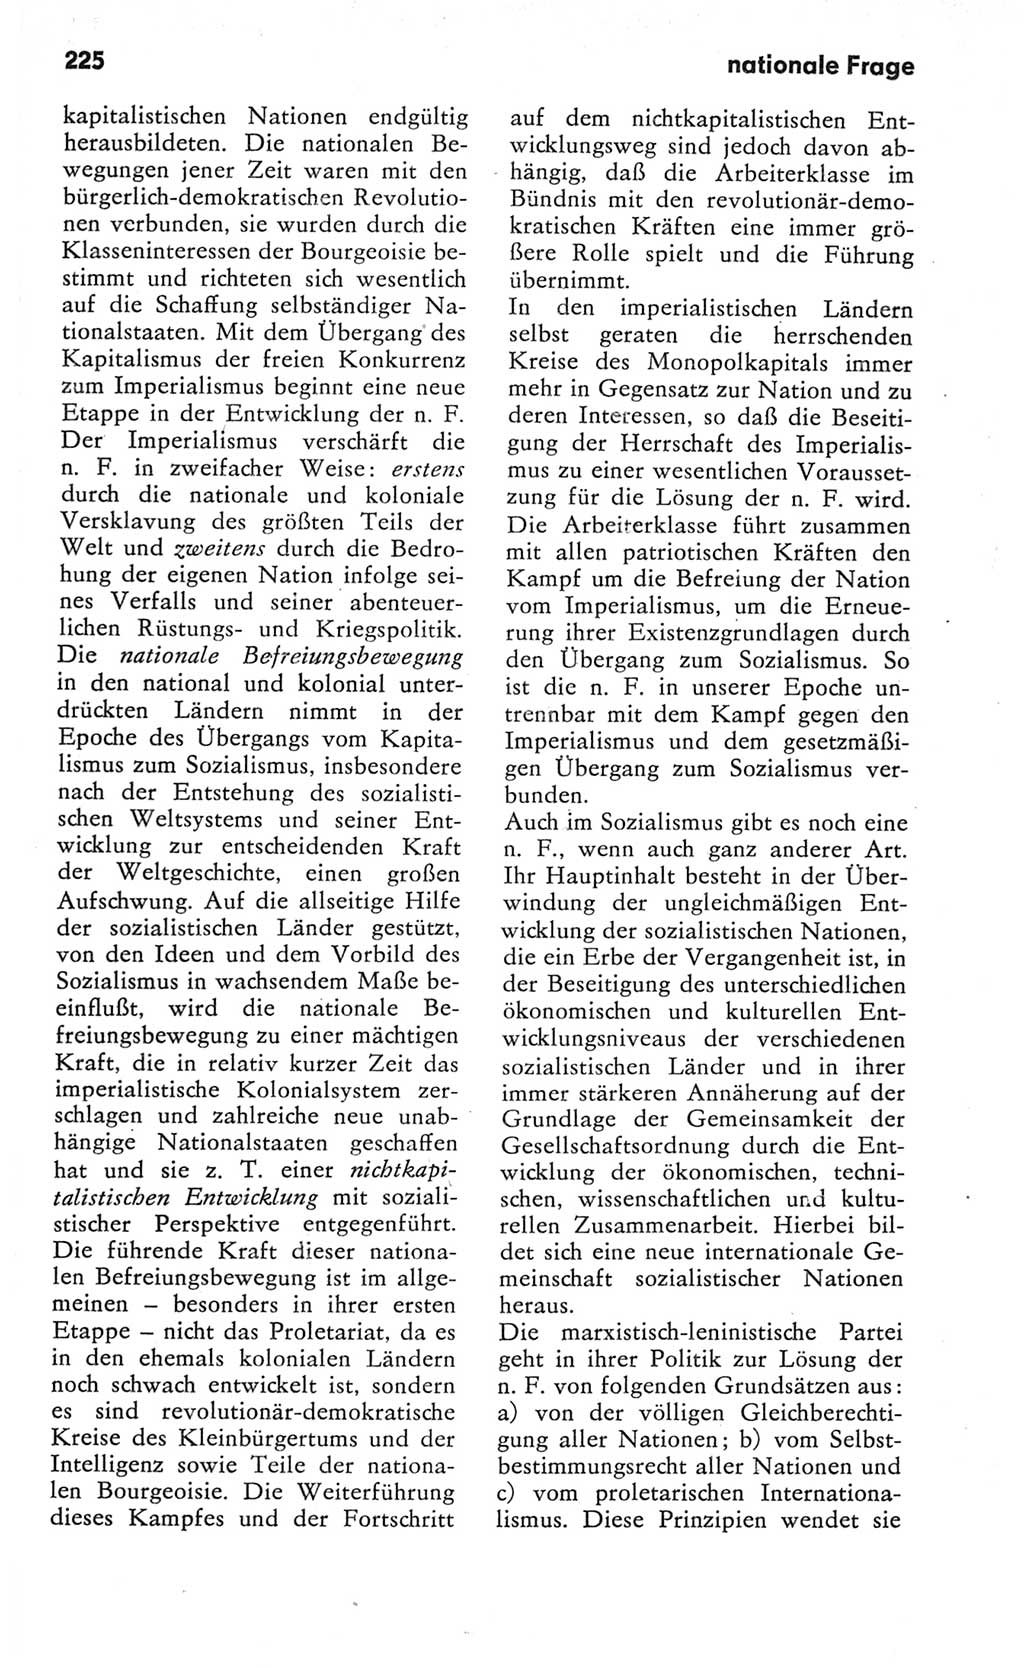 Kleines Wörterbuch der marxistisch-leninistischen Philosophie [Deutsche Demokratische Republik (DDR)] 1982, Seite 225 (Kl. Wb. ML Phil. DDR 1982, S. 225)